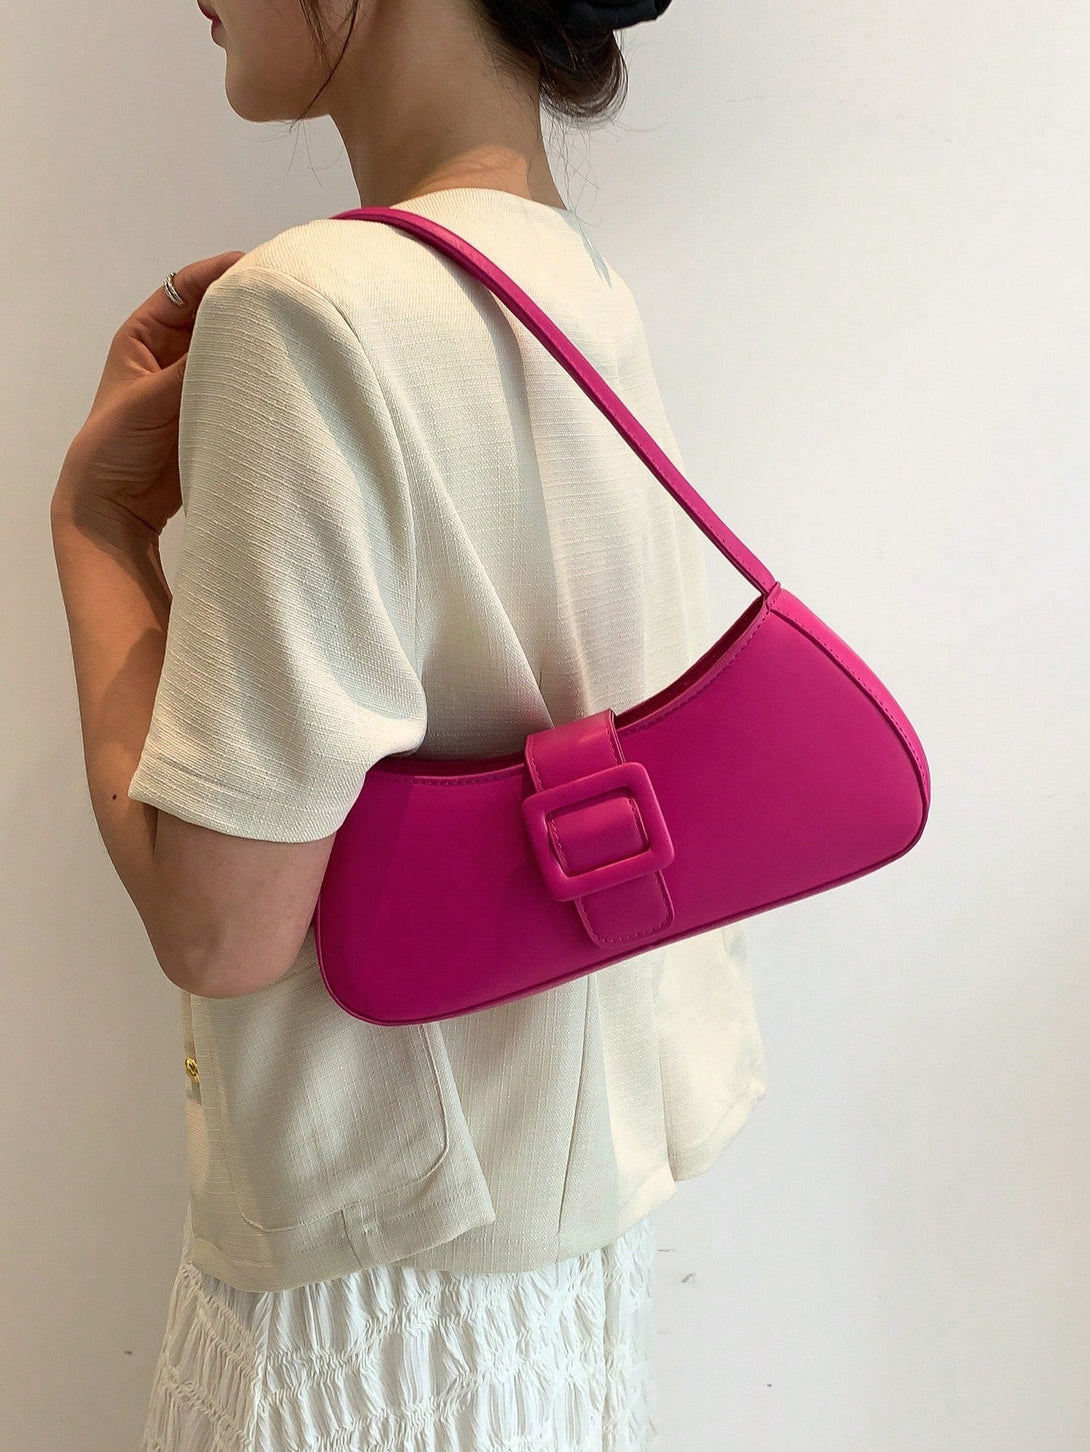 Buckle Decor Baguette Bag Funky Shoulder Bag - Negative Apparel